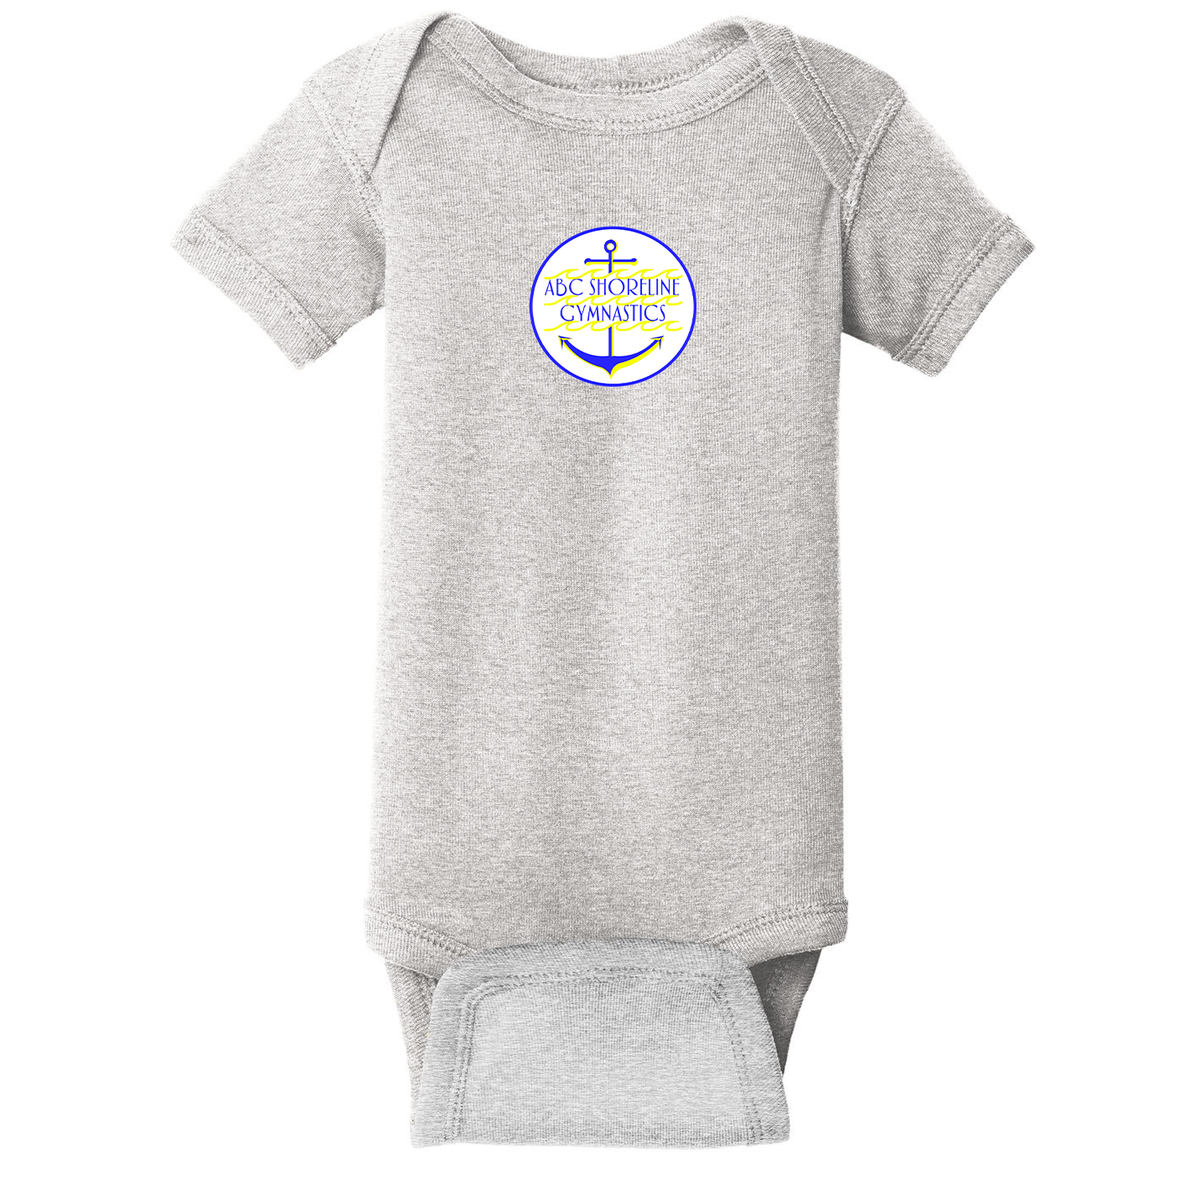 ABC Shoreline Gymnastics Infant Baby Rib Bodysuit